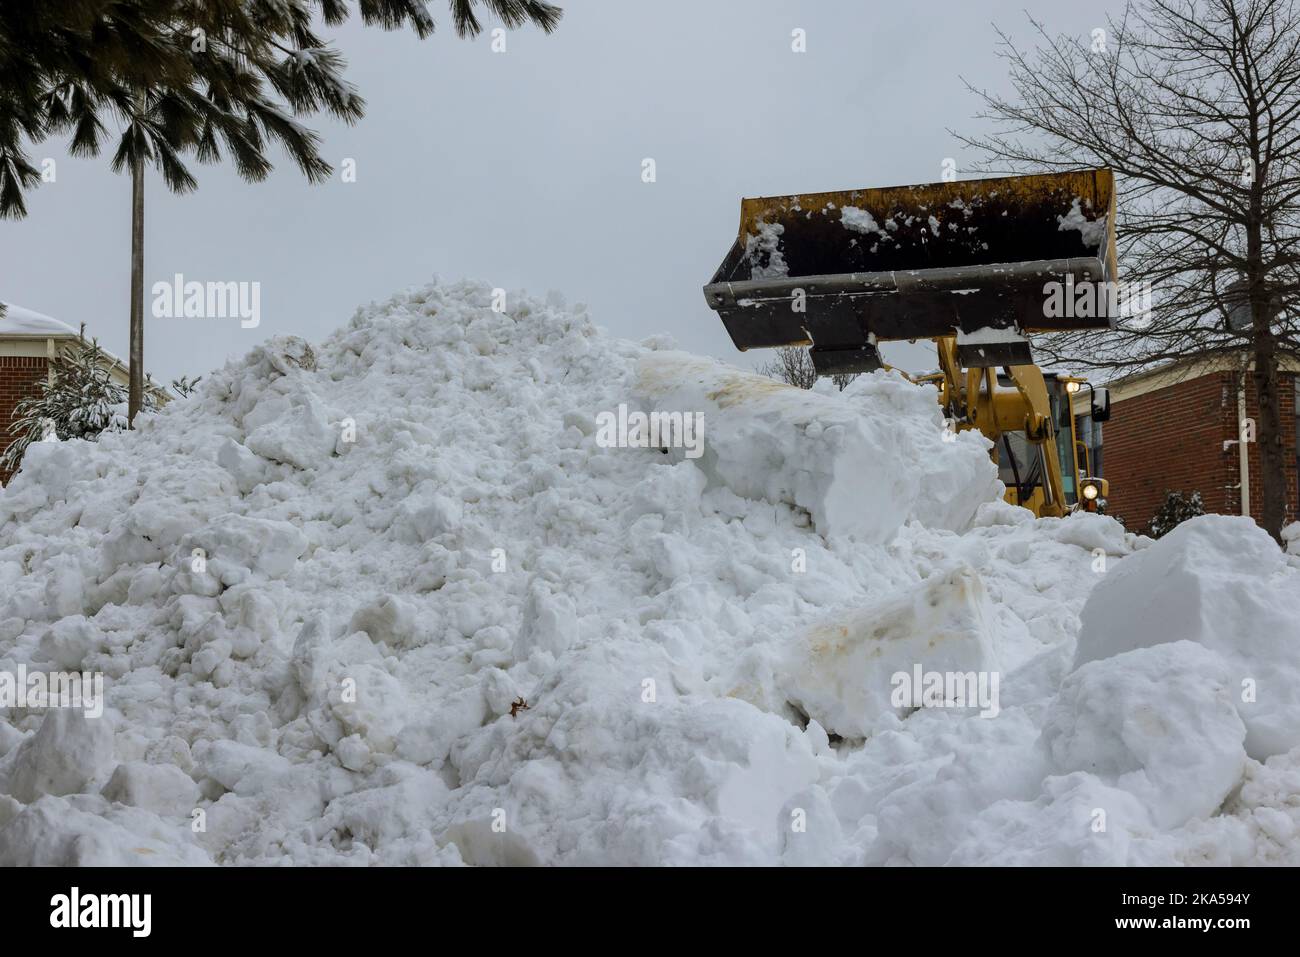 Neige blizzard nettoyer avec le tracteur après d'énormes tempêtes en hiver il y a beaucoup de flocons de neige Banque D'Images